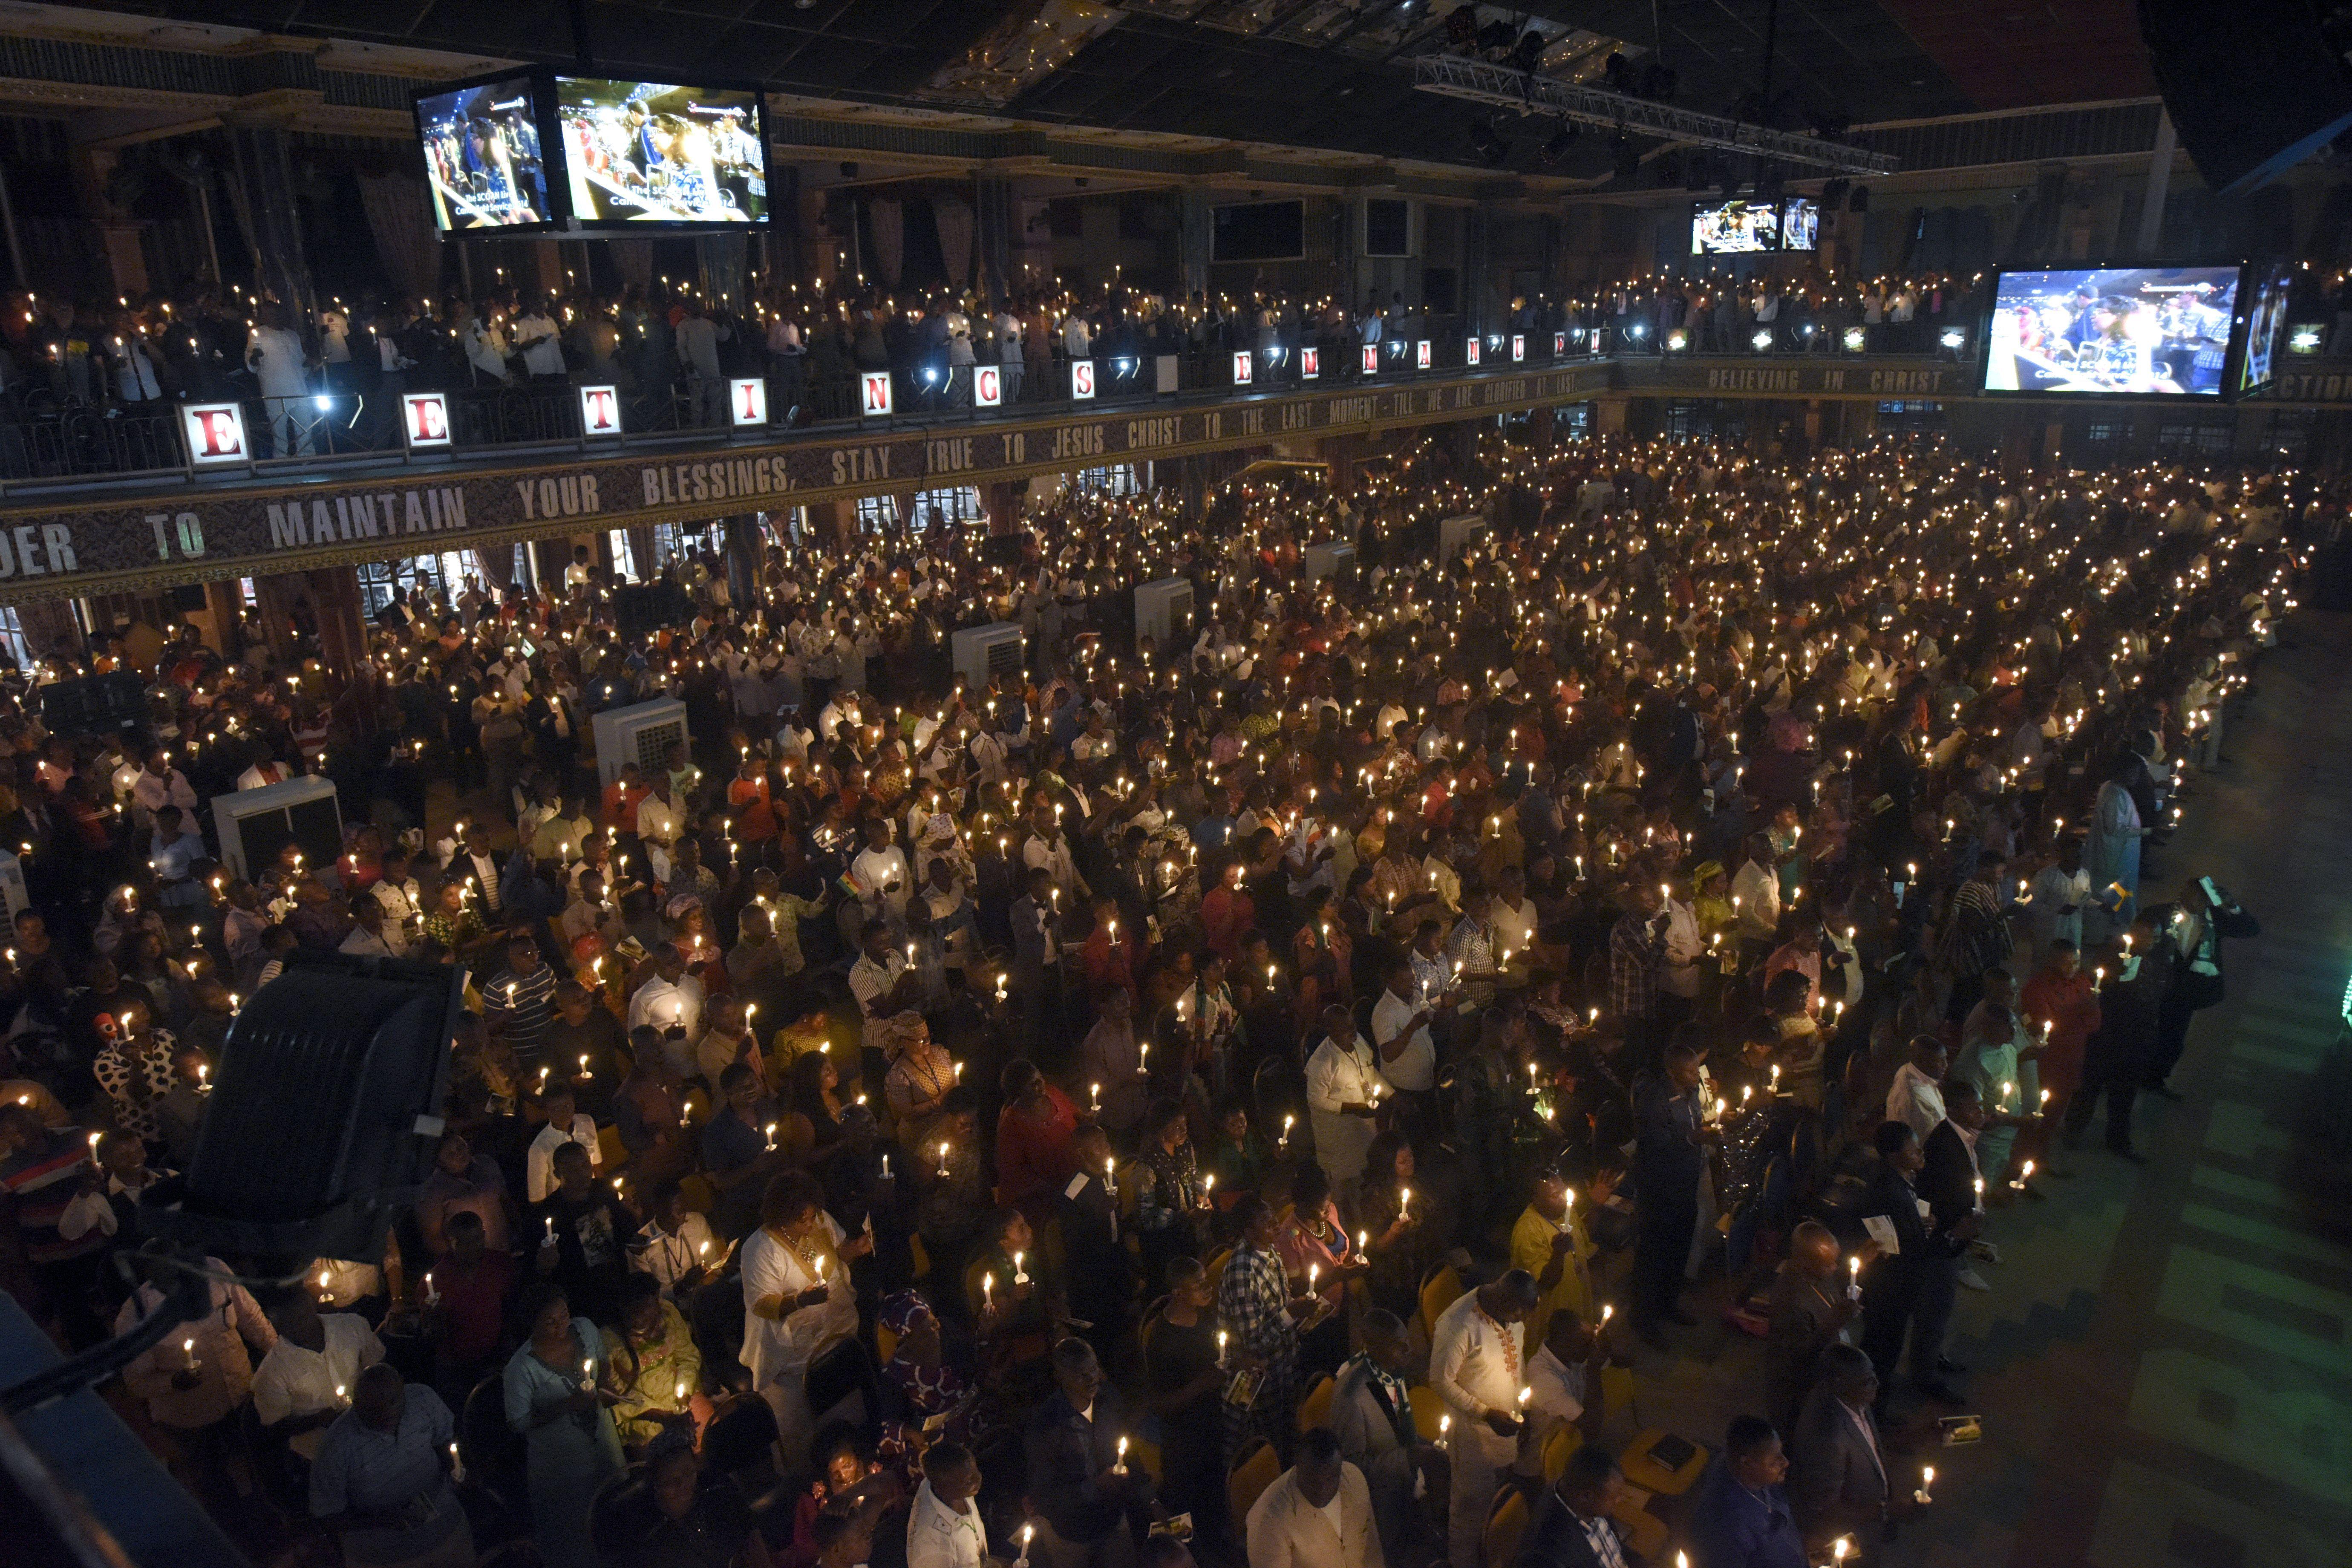 Vista de una de las multitudinarias celebraciones religiosas presididas por el fallecido TB Joshua